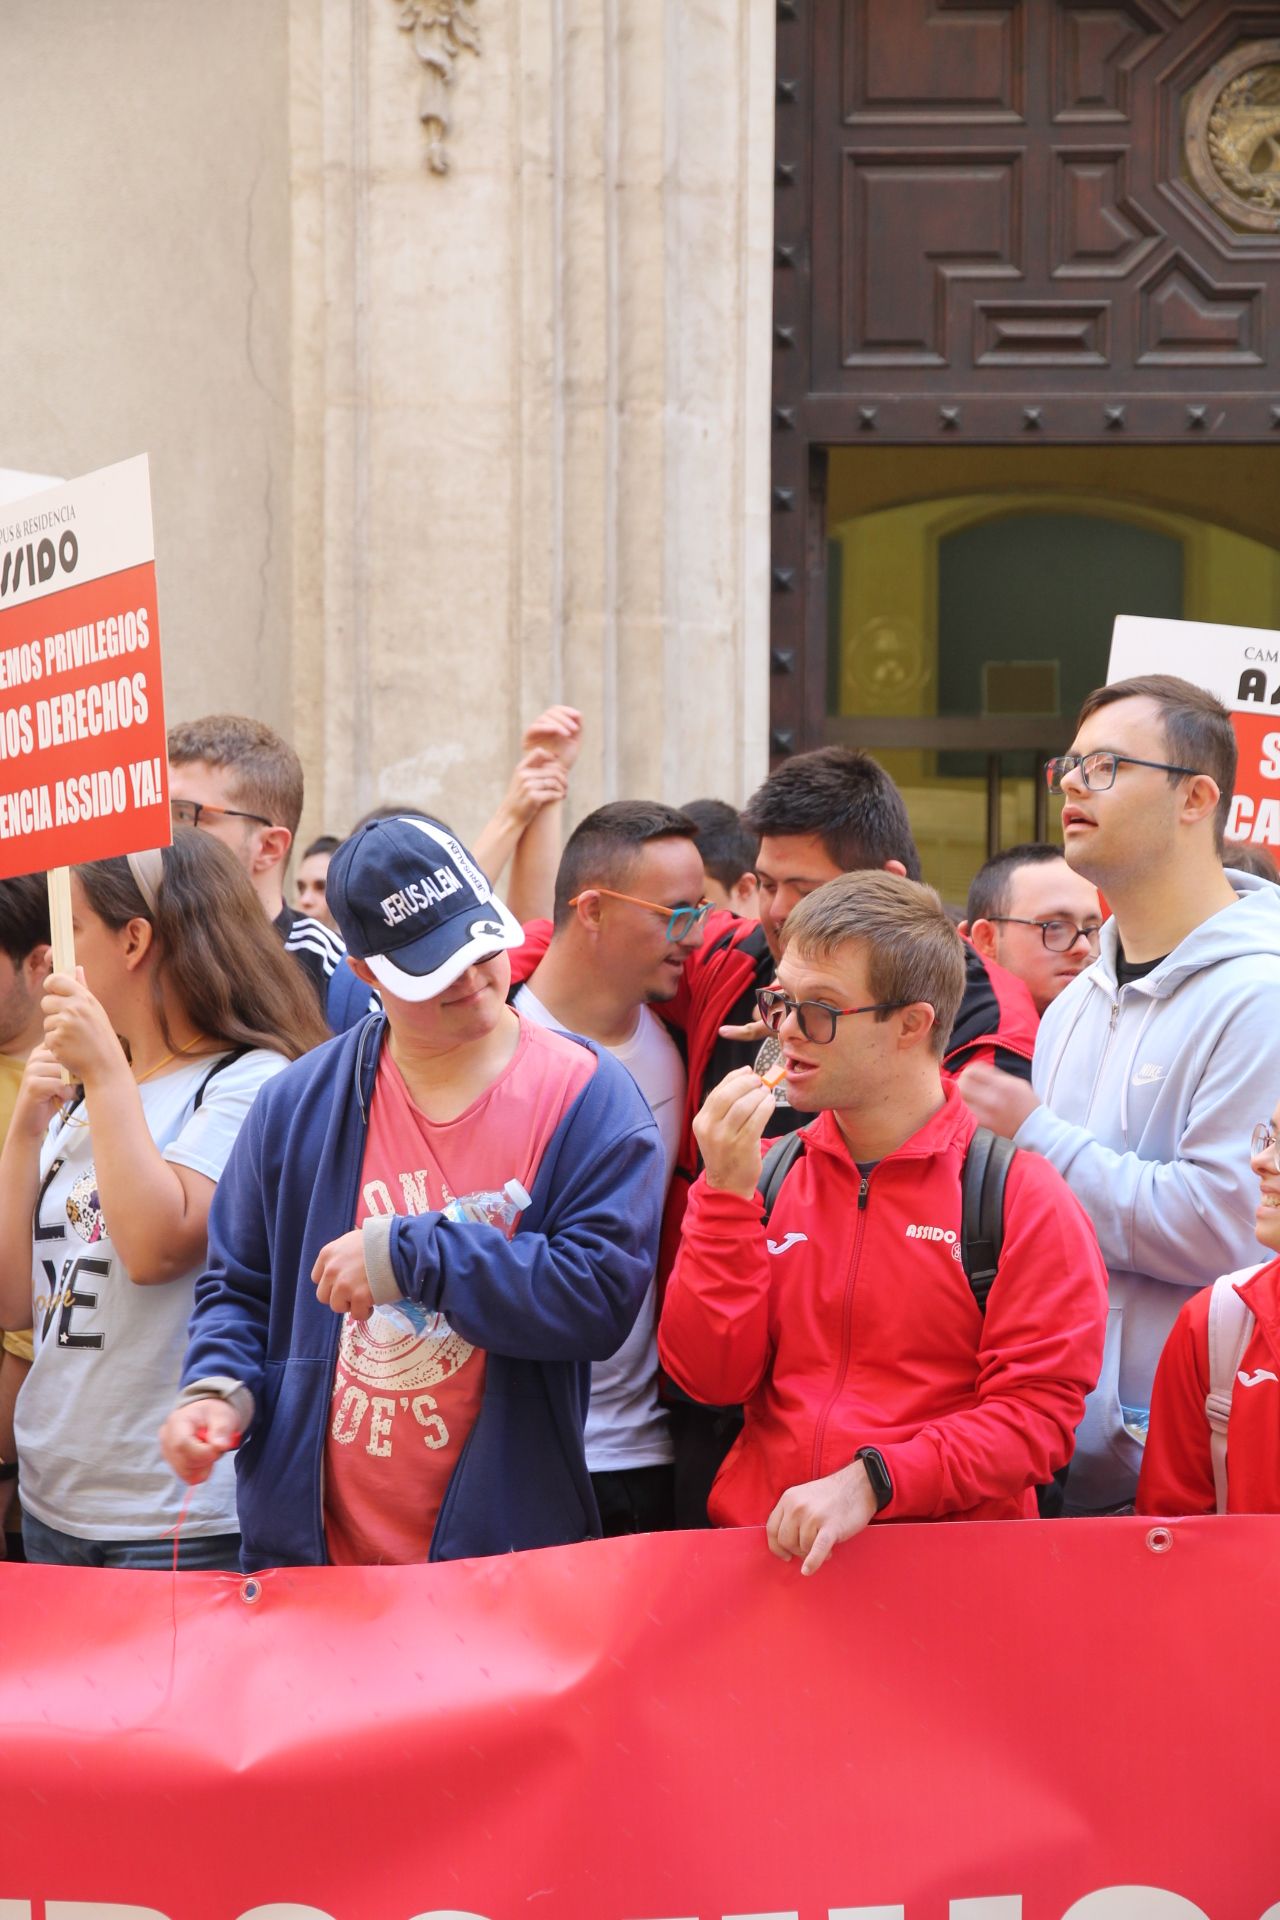 Concentración de Assido en Murcia ante la CHS